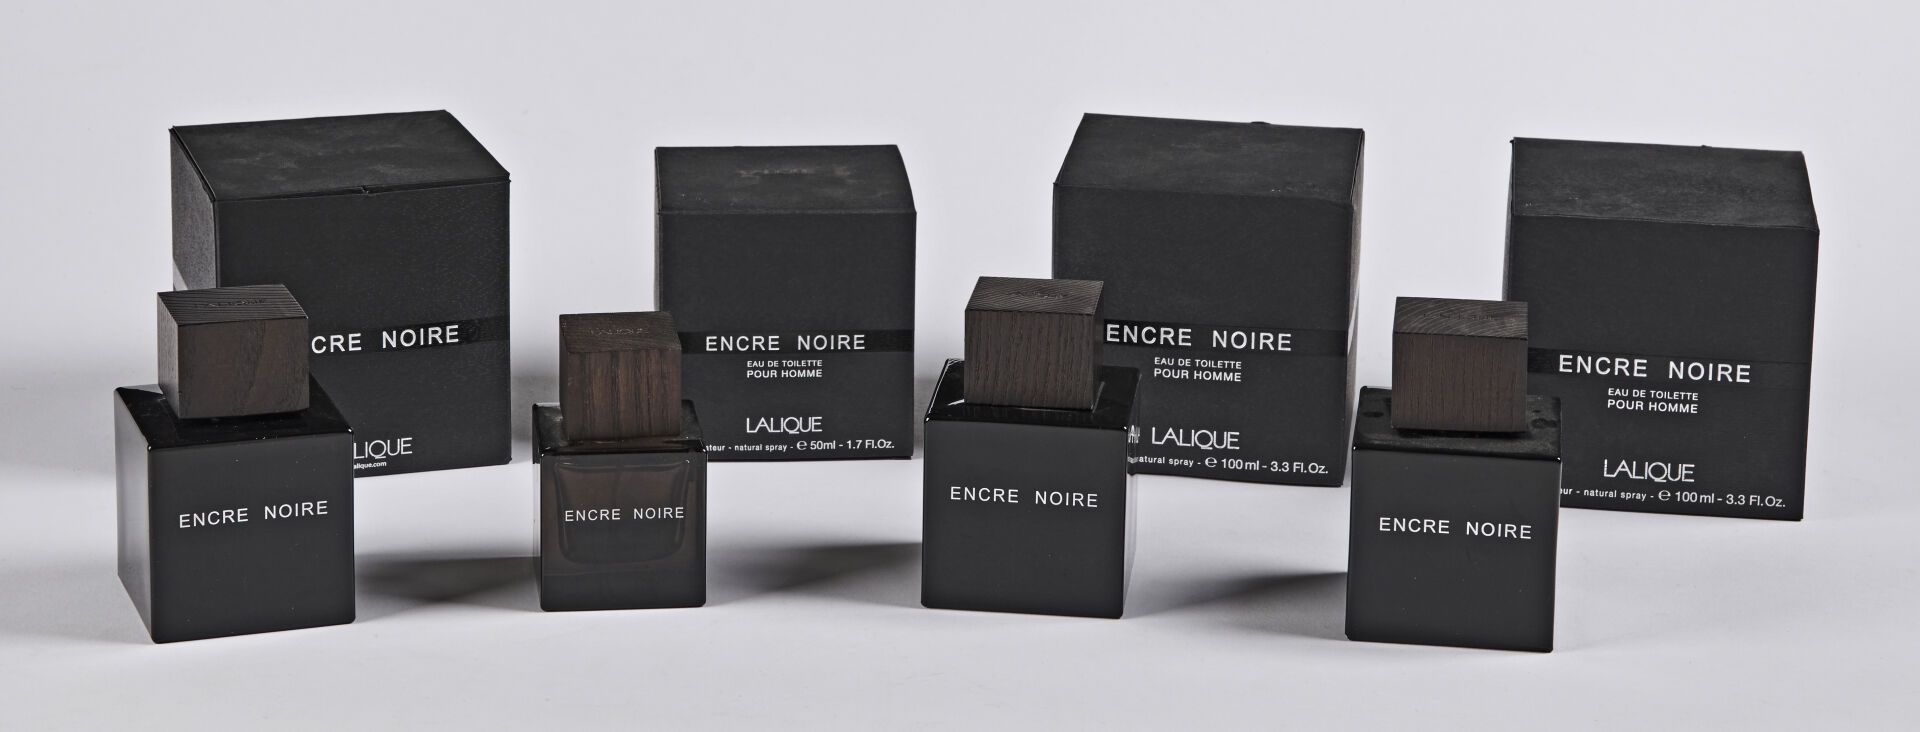 Null 克里斯托尔-拉利克

一套四个 "Encre Noire "香水瓶。

黑压压的水晶样板，有亚光和光亮的表面，染色橡木塞。在他们的原箱中。

正面有标&hellip;